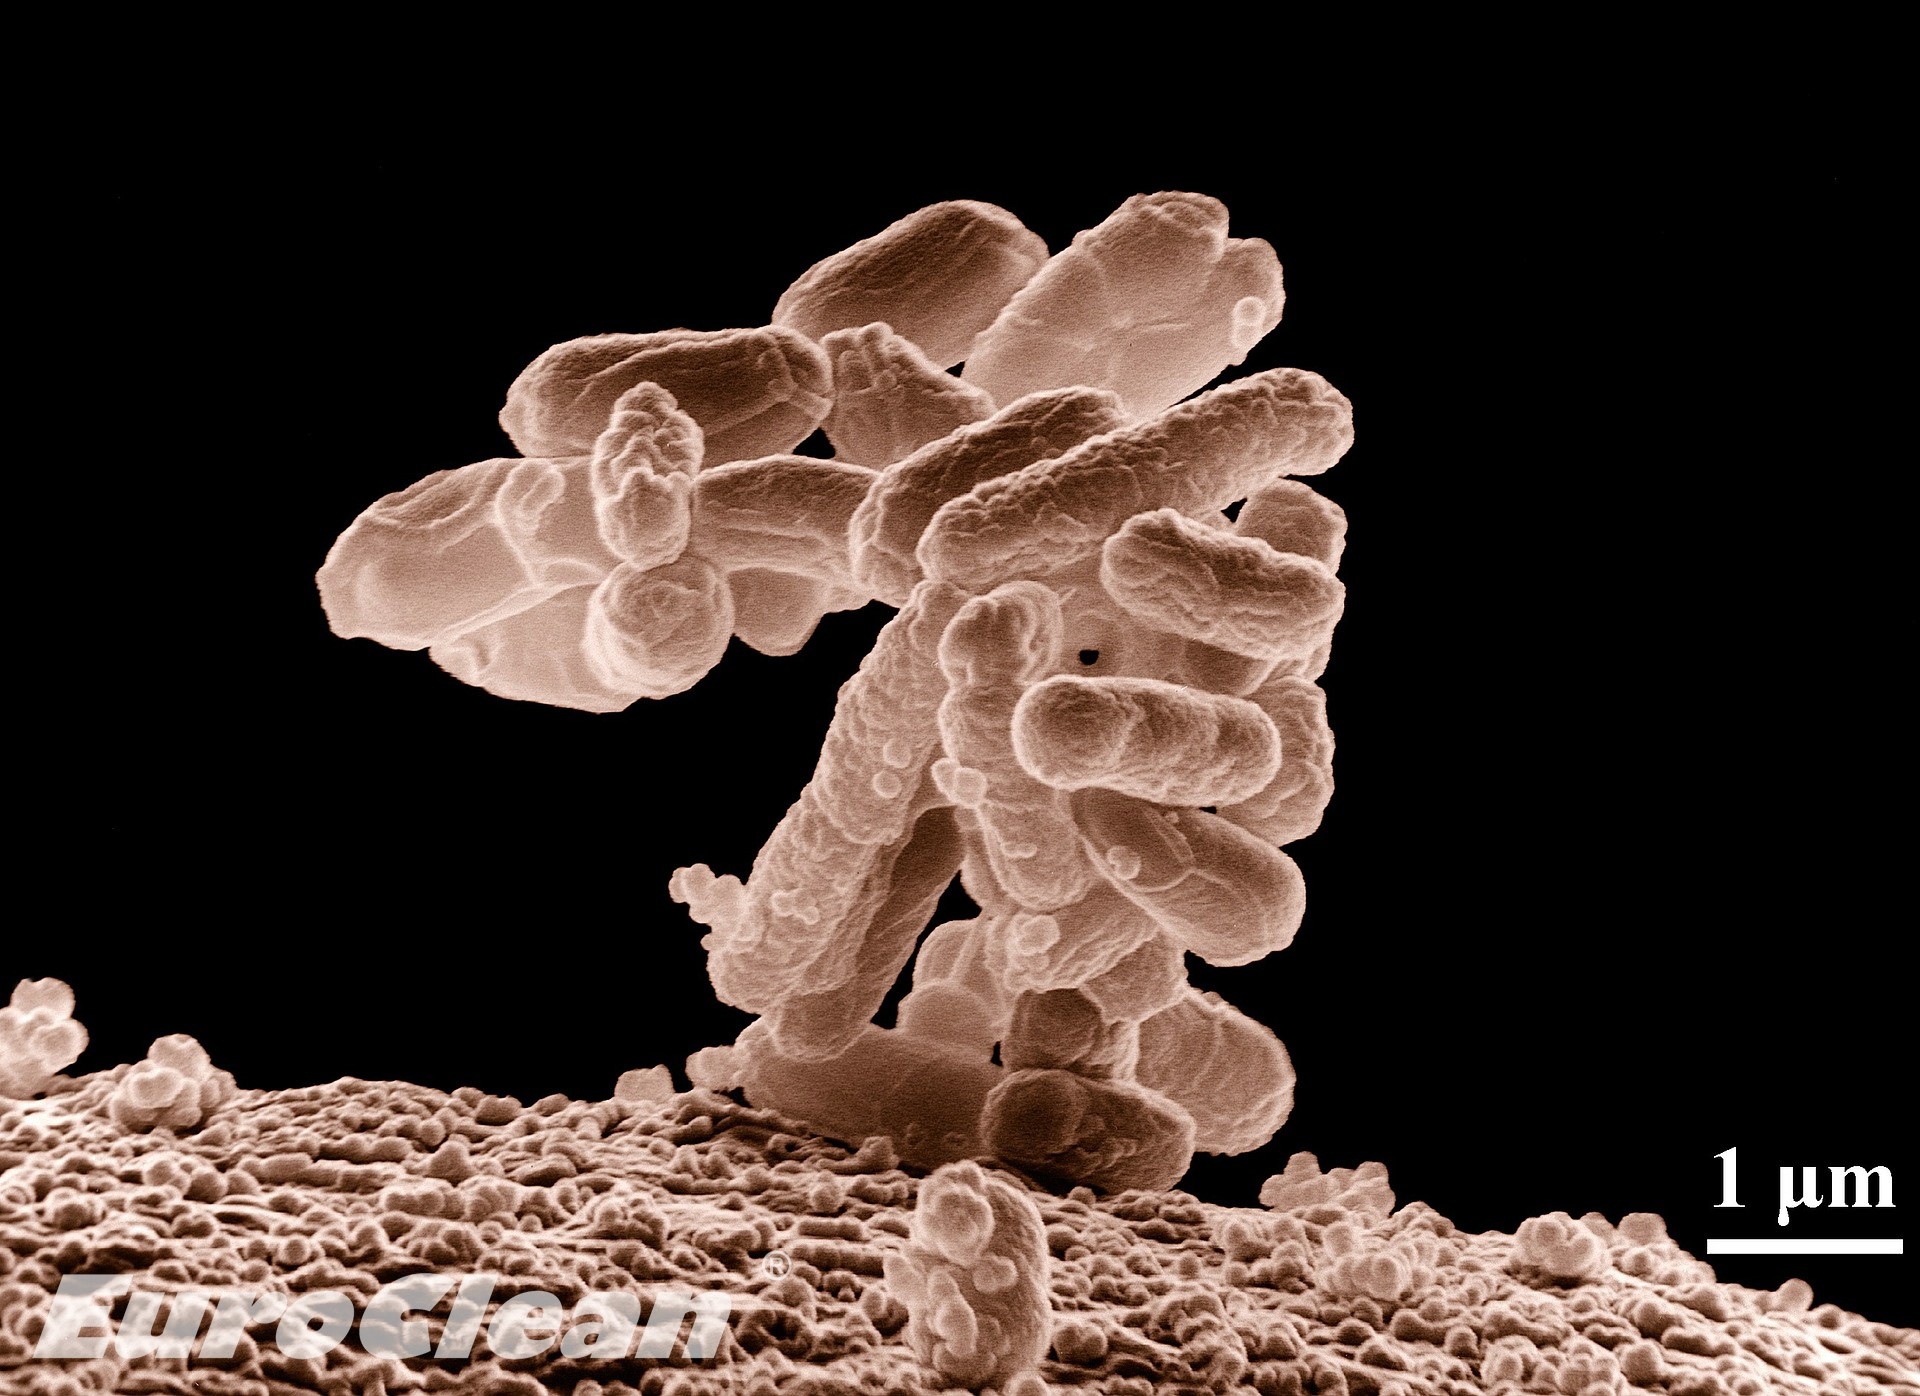 Co způsobují koliformní bakterie?